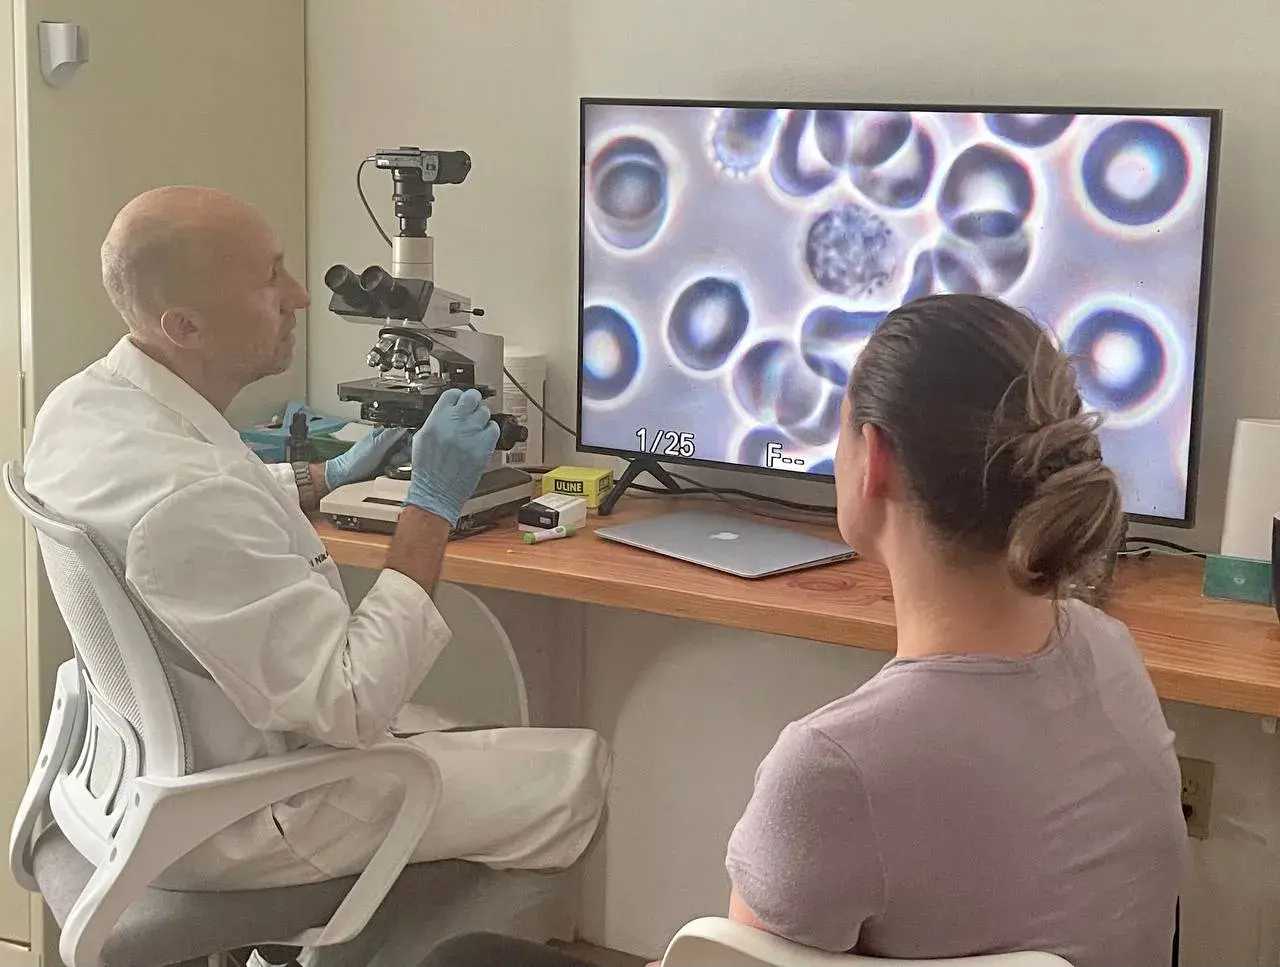 Др Никольский разъясняет пациентке состояние её крови, изображение с микроскопа транслируется на экран компьютера